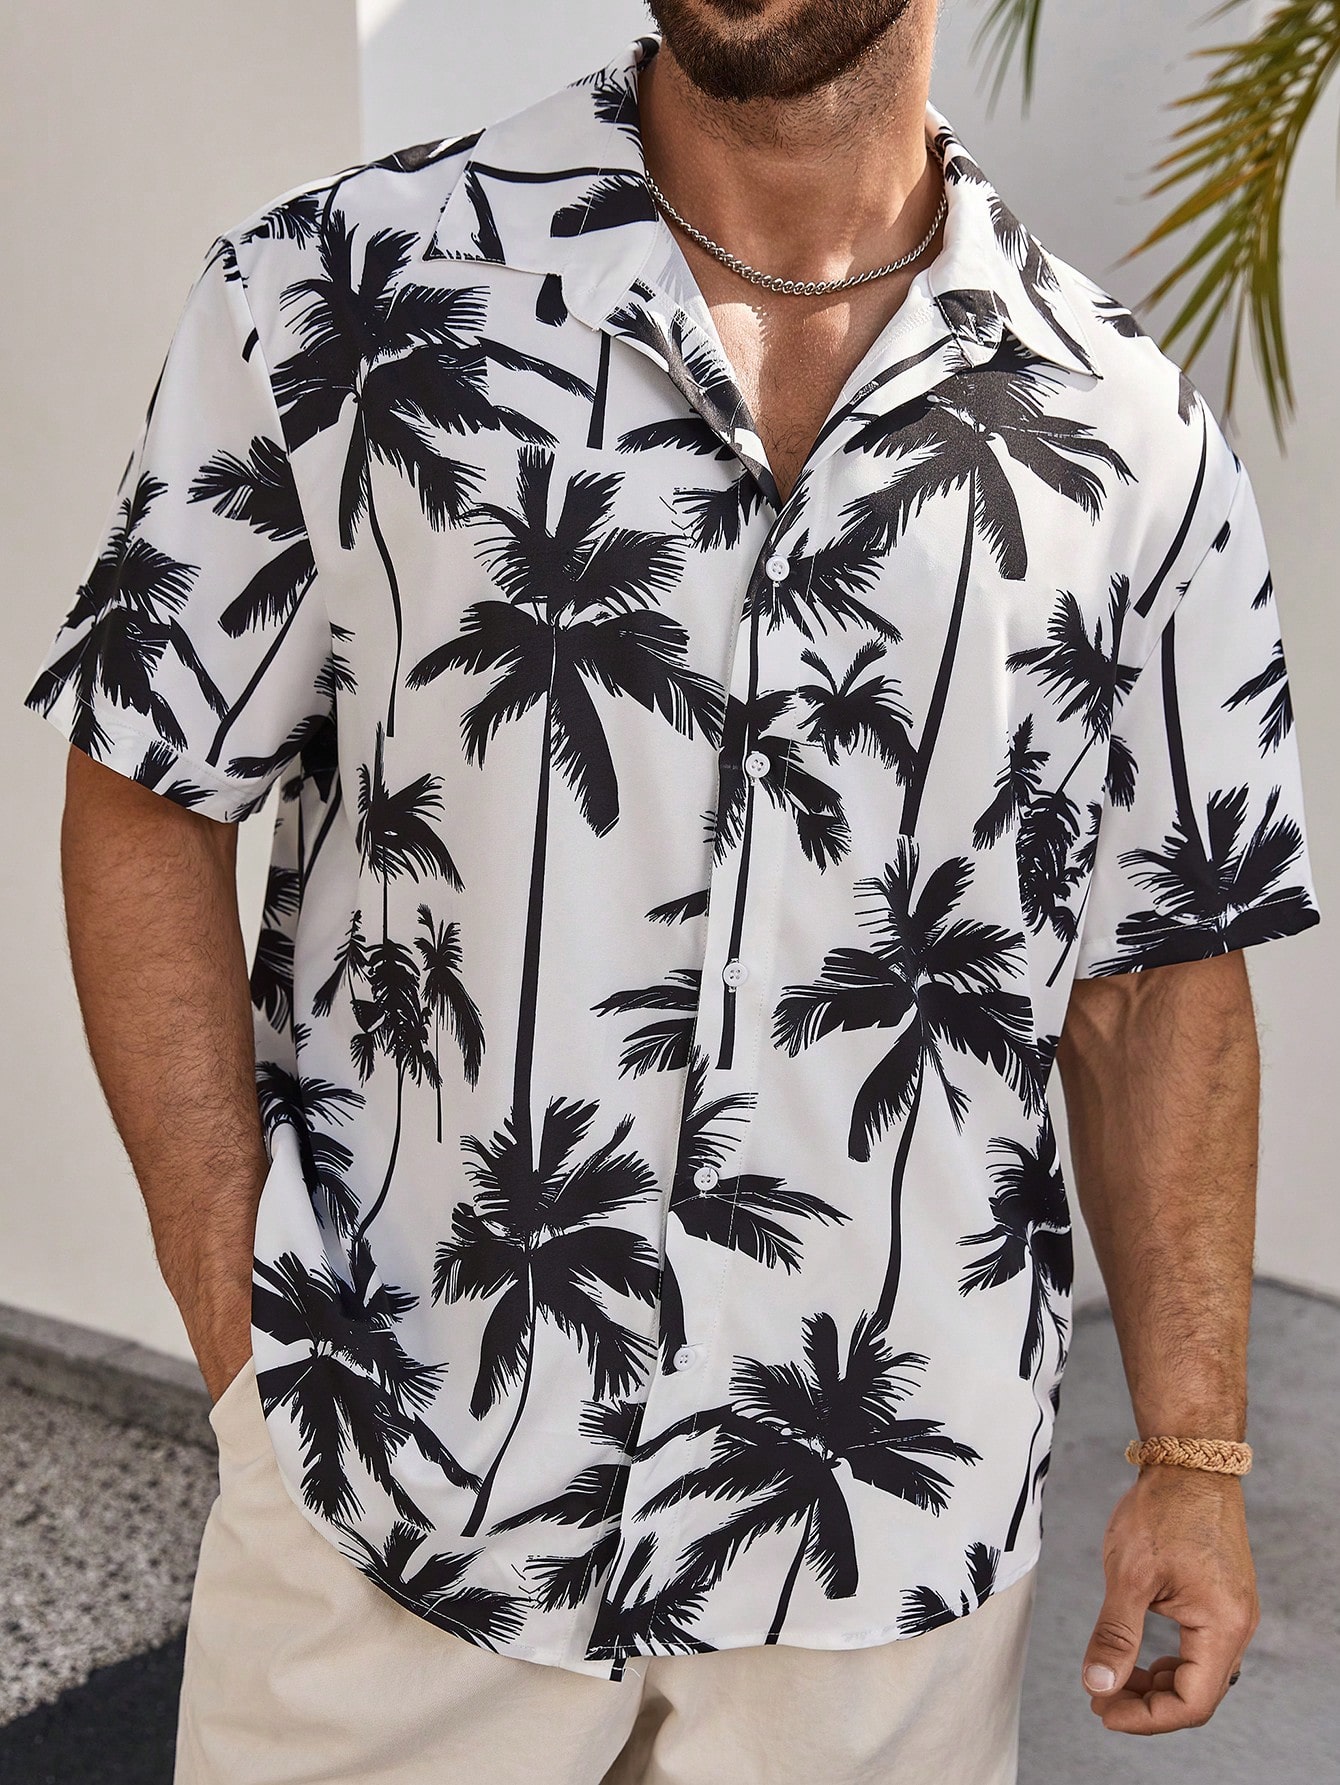 Мужская рубашка с коротким рукавом Manfinity RSRT Plus с цифровым принтом пальм, черное и белое